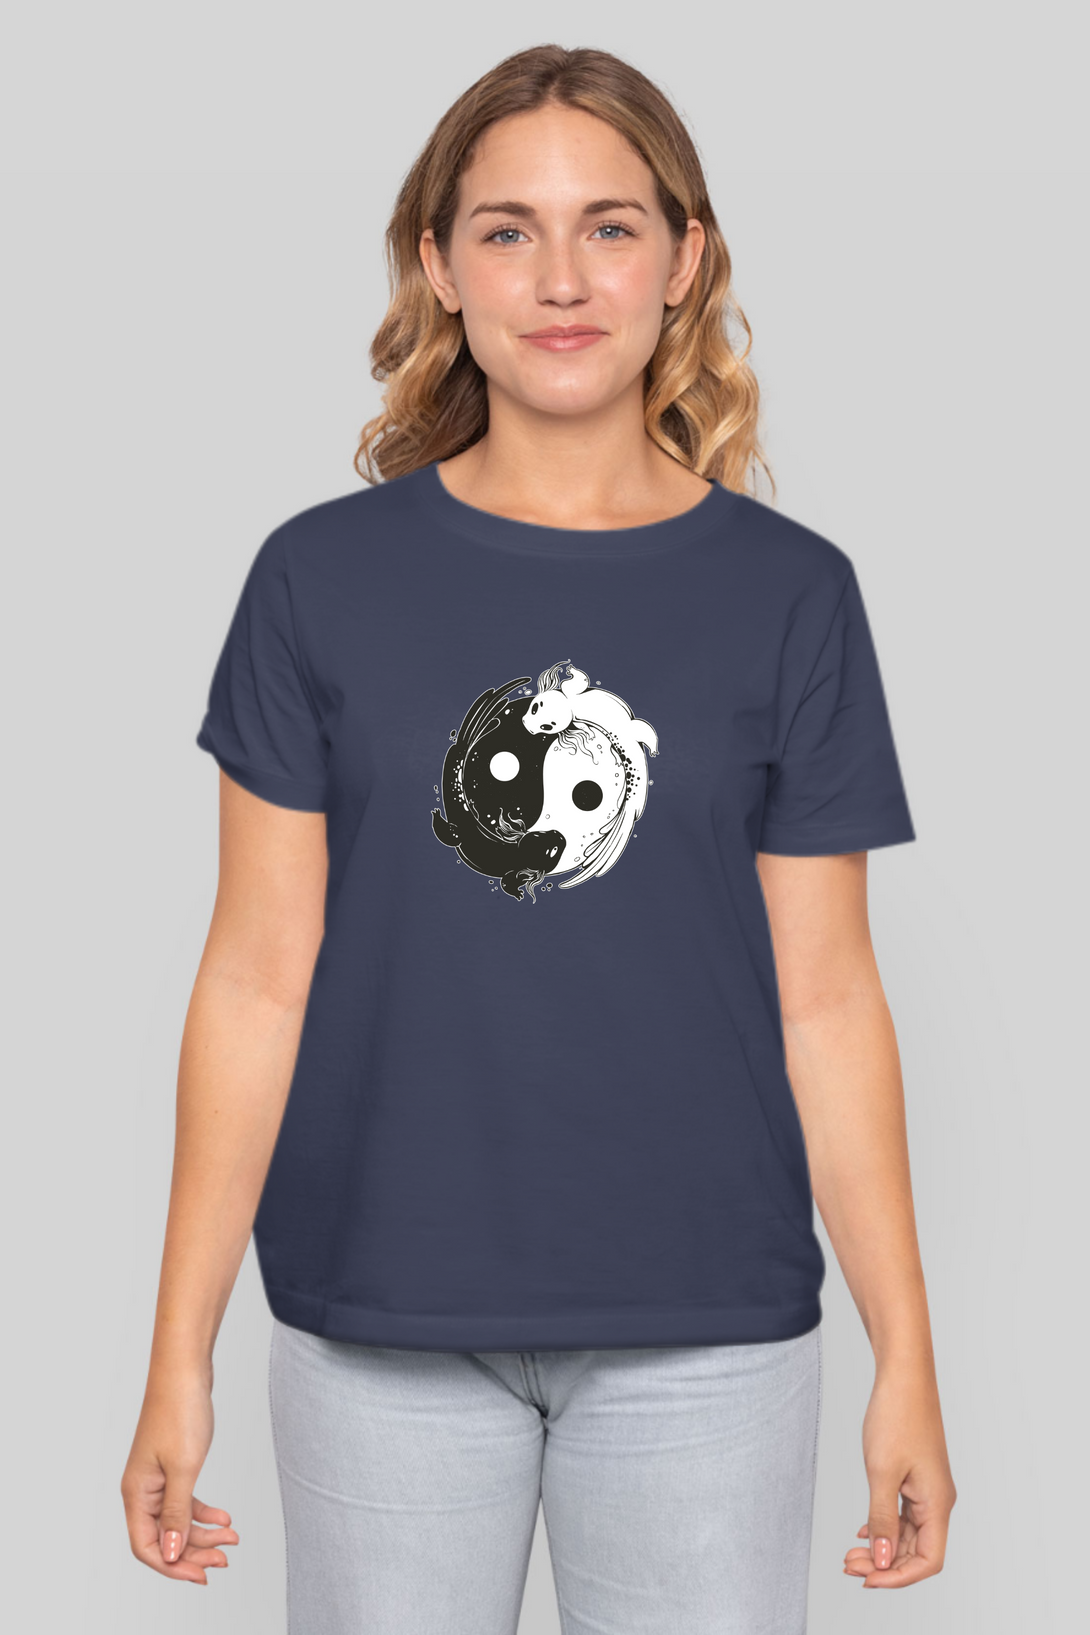 Yin Yang Axolotl Printed T-Shirt For Women - WowWaves - 9